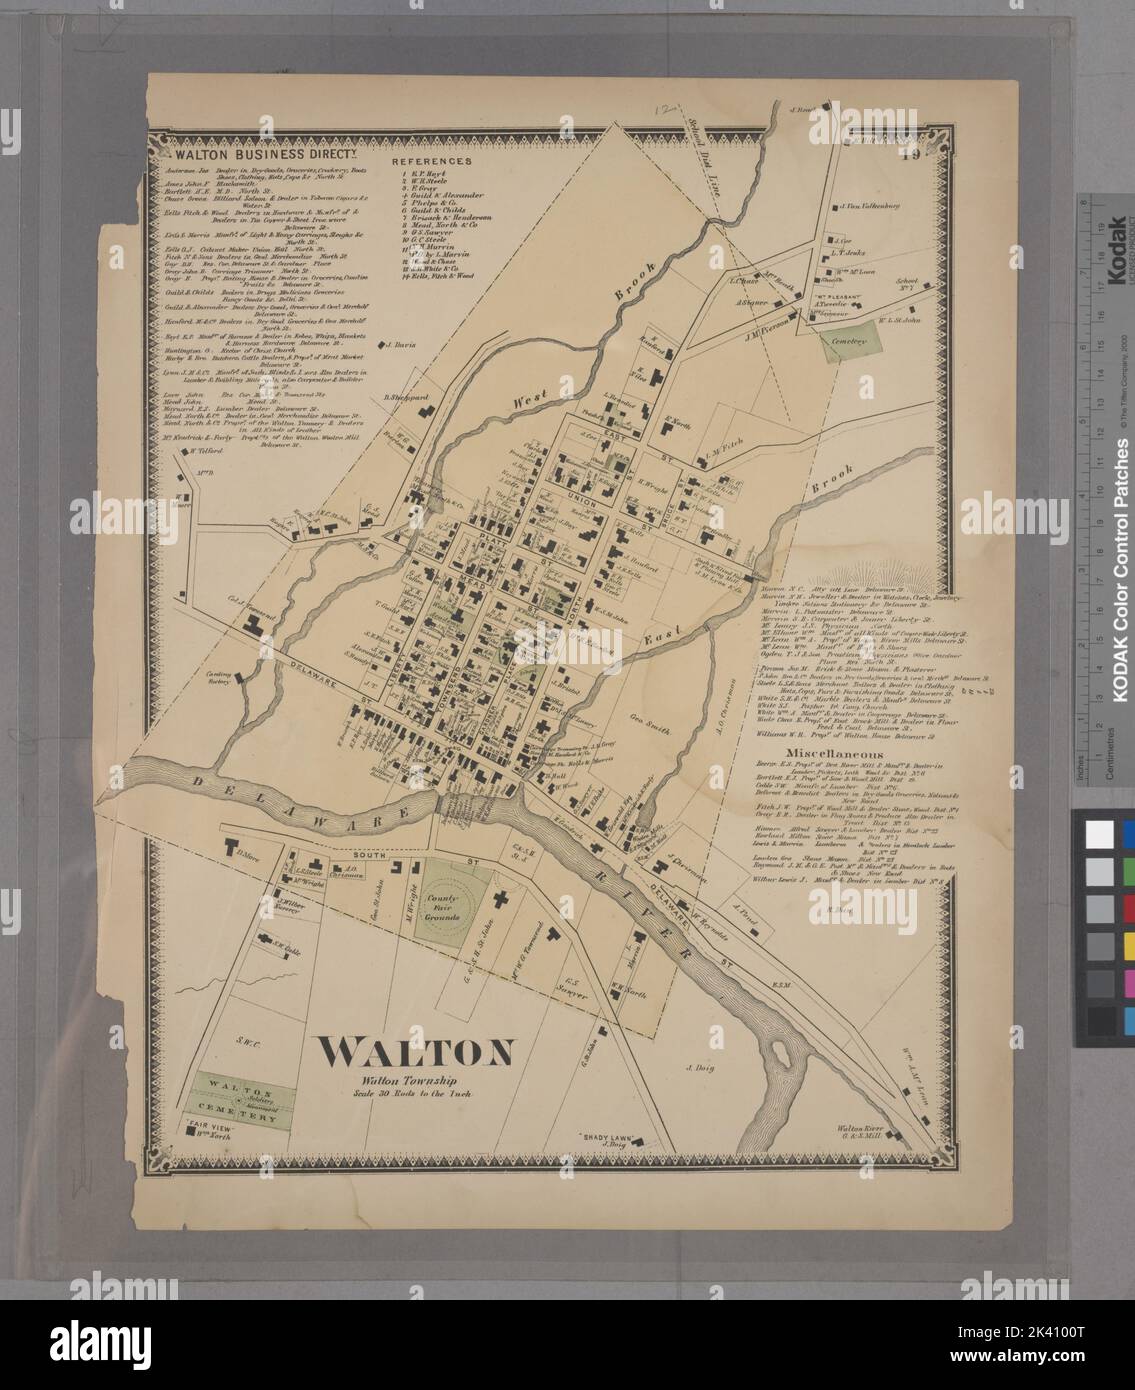 Walton Dirección de Negocios. ; Cartográfica de Walton Village. Atlas, Mapas. 1869. División de mapas Lionel Pincus y Princesa Firyal. Condado de Delaware (N.Y.) Foto de stock